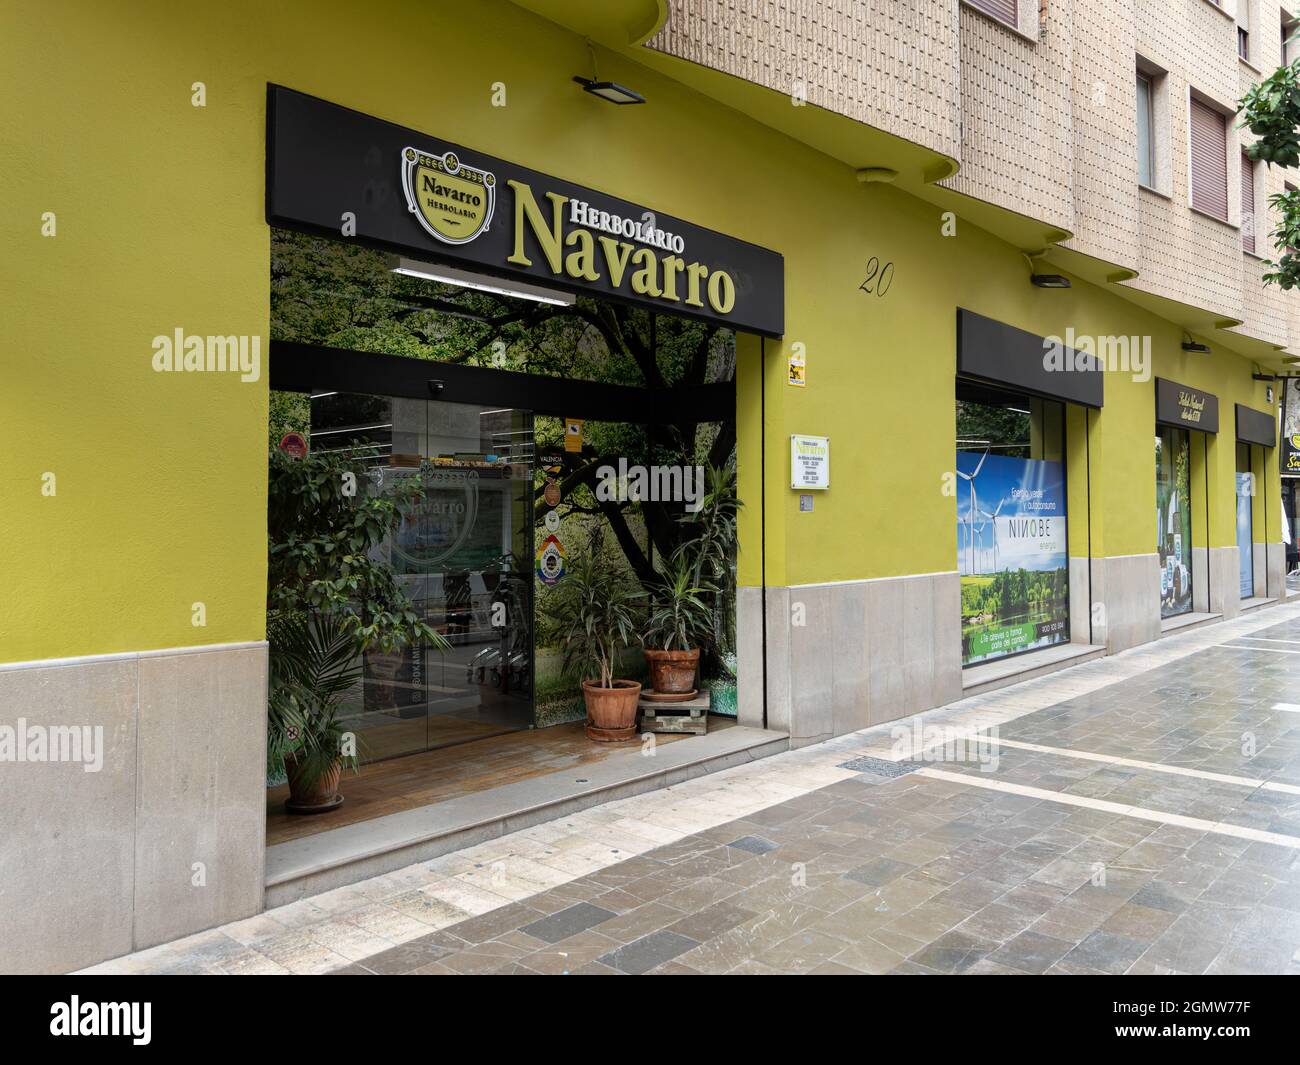 VALENCIA, SPAIN - SEPTEMBER 14, 2021: Herbolario Navarro sells eco, healty, natural products Stock Photo